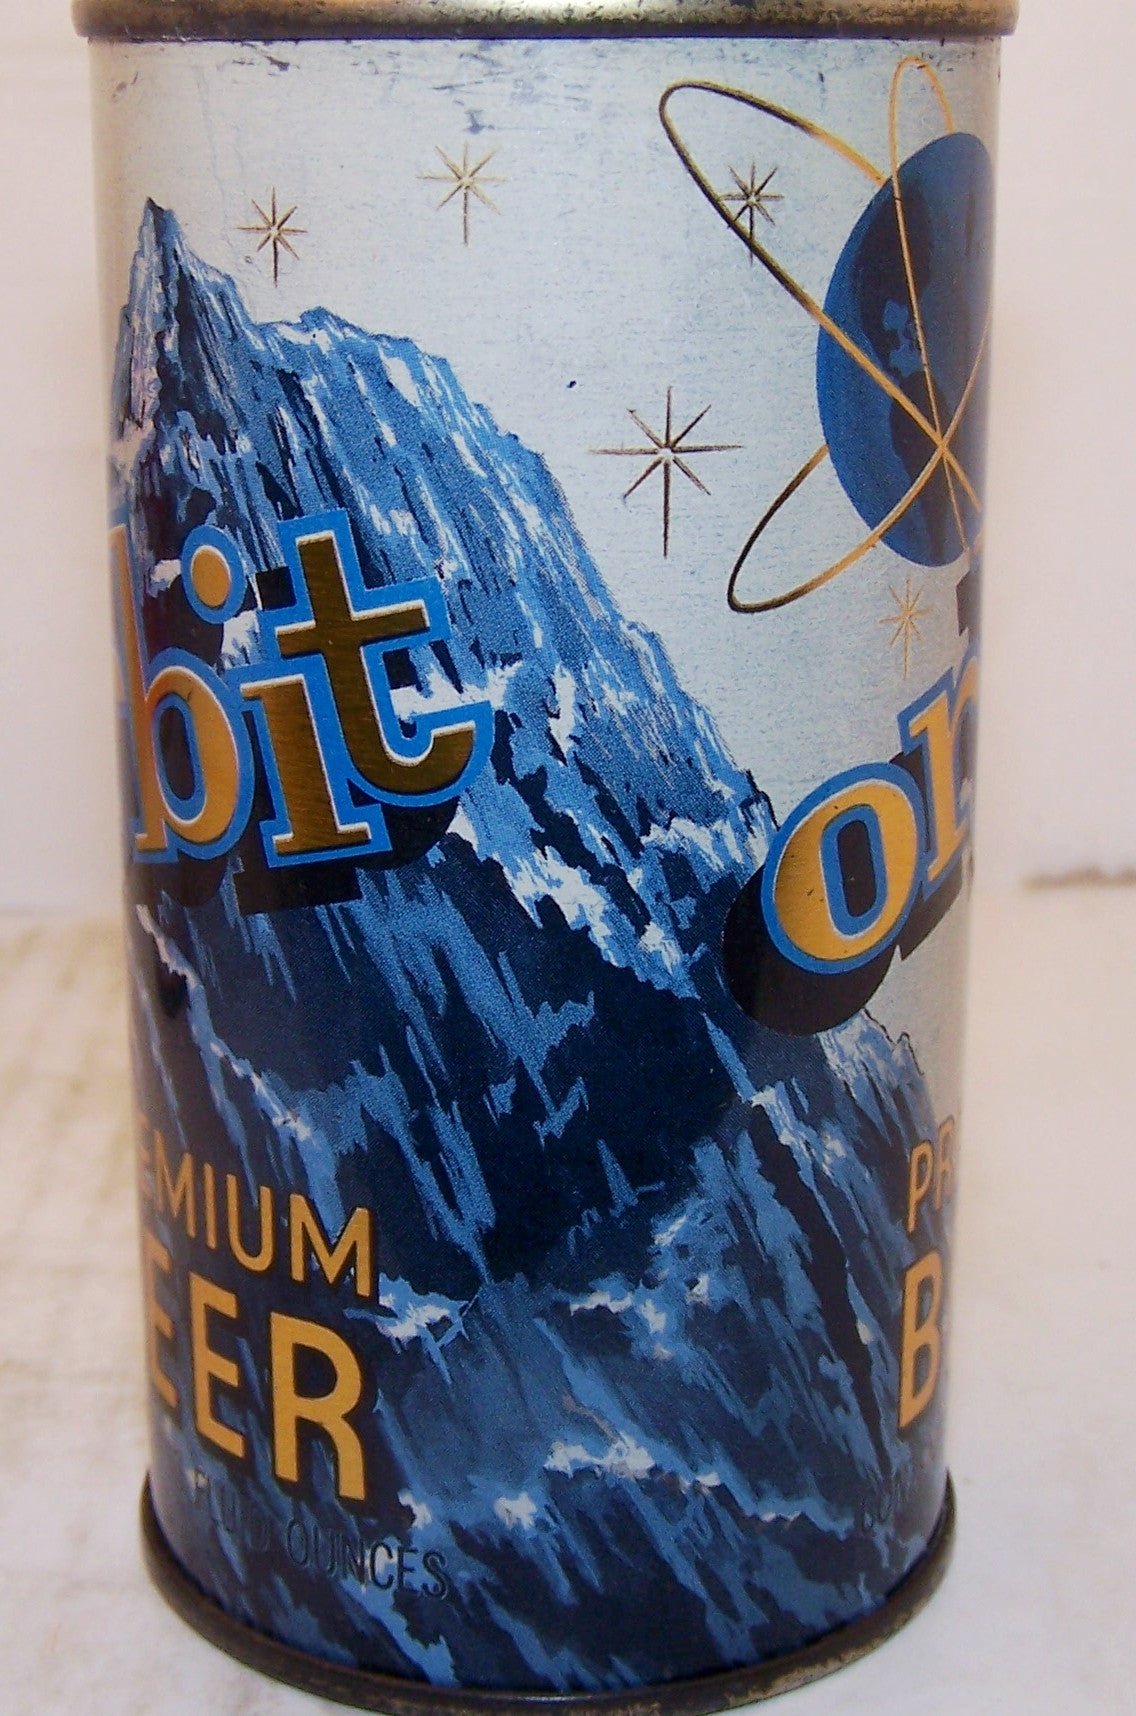 Orbit Premium Beer, USBC 109-17, Grade 1 sold on 10/29/15